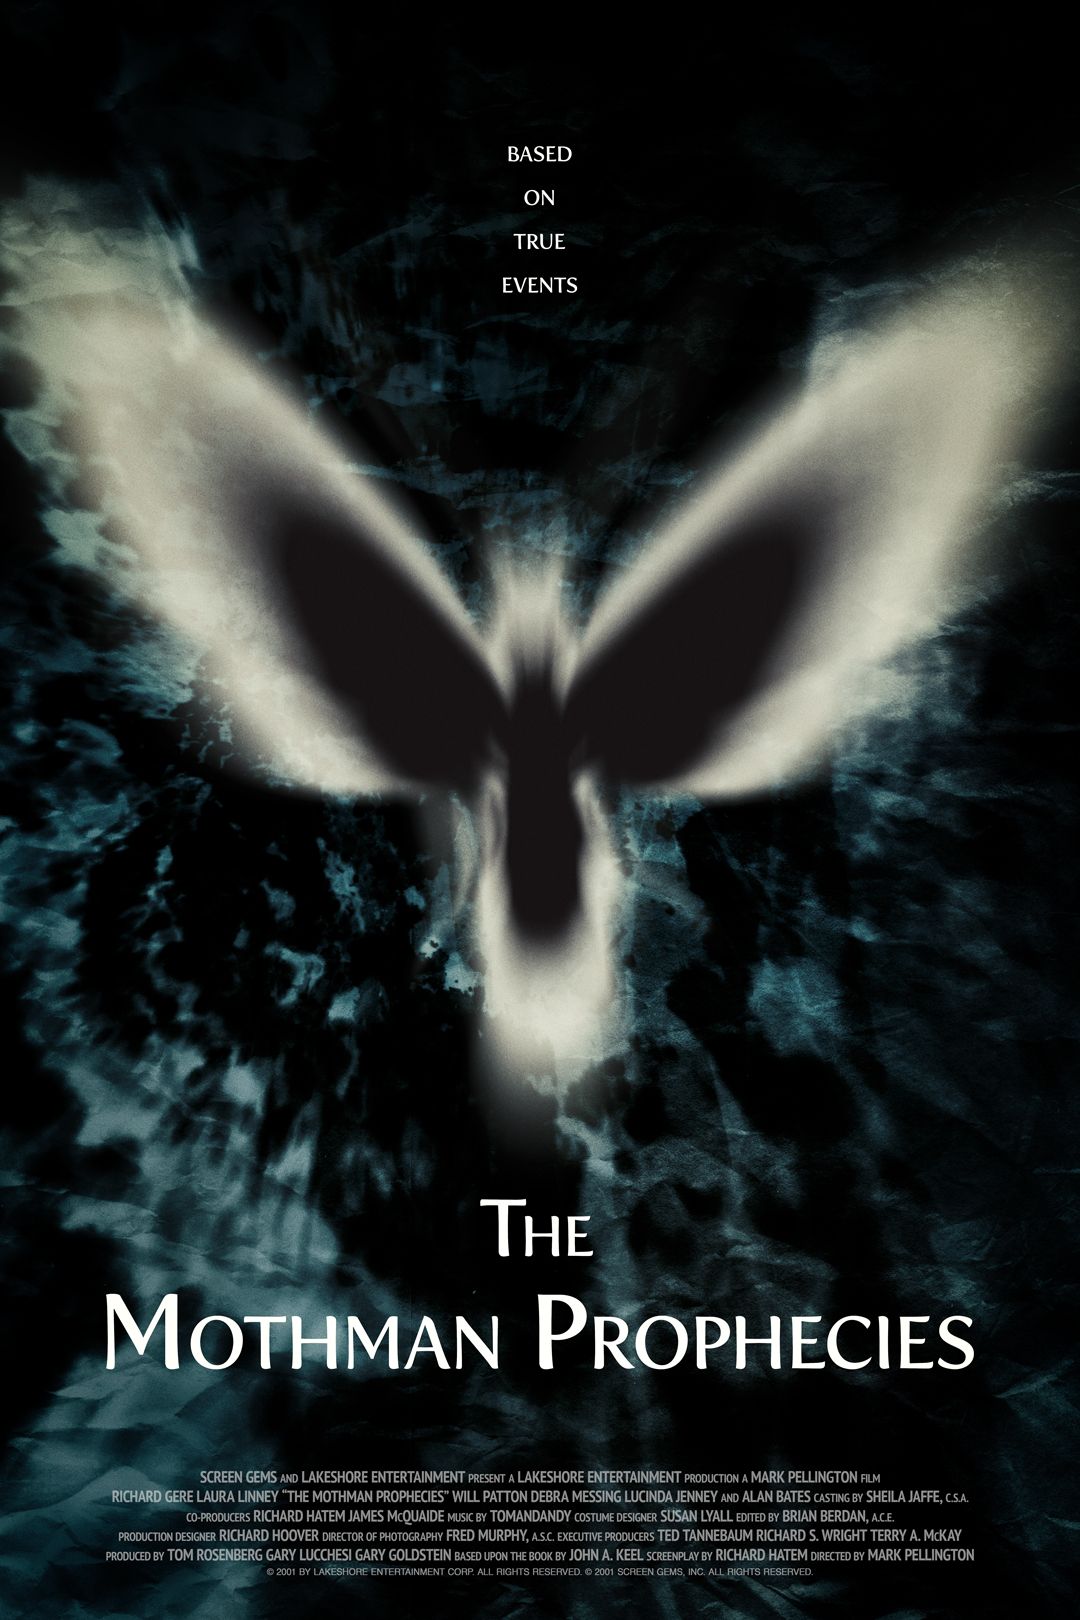 The Mothman Prophecies (2002) ★★★☆☆